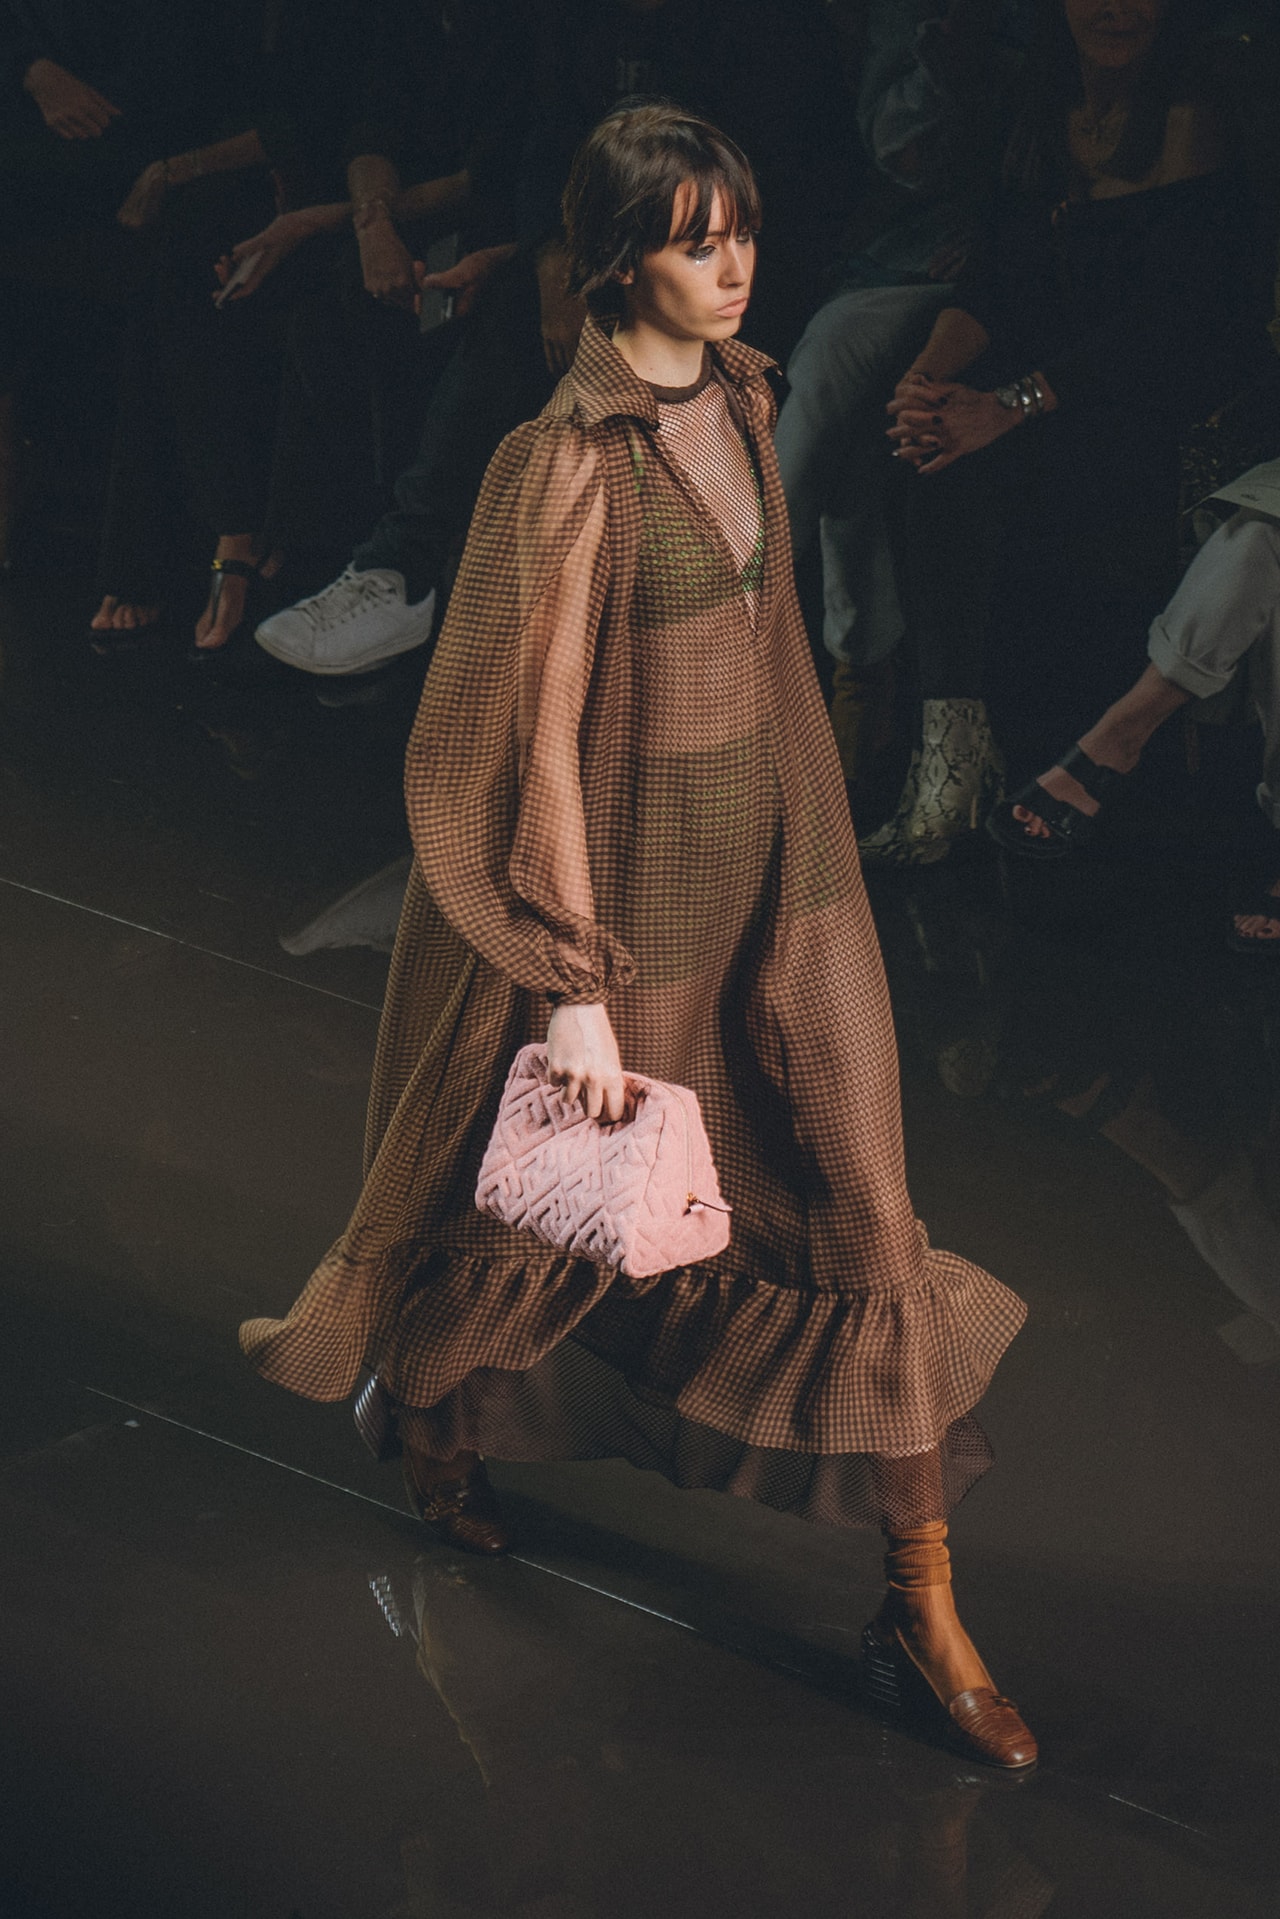 Fendi Spring Summer 2020 Milan Fashion Week Runway Show Model Pink Bag